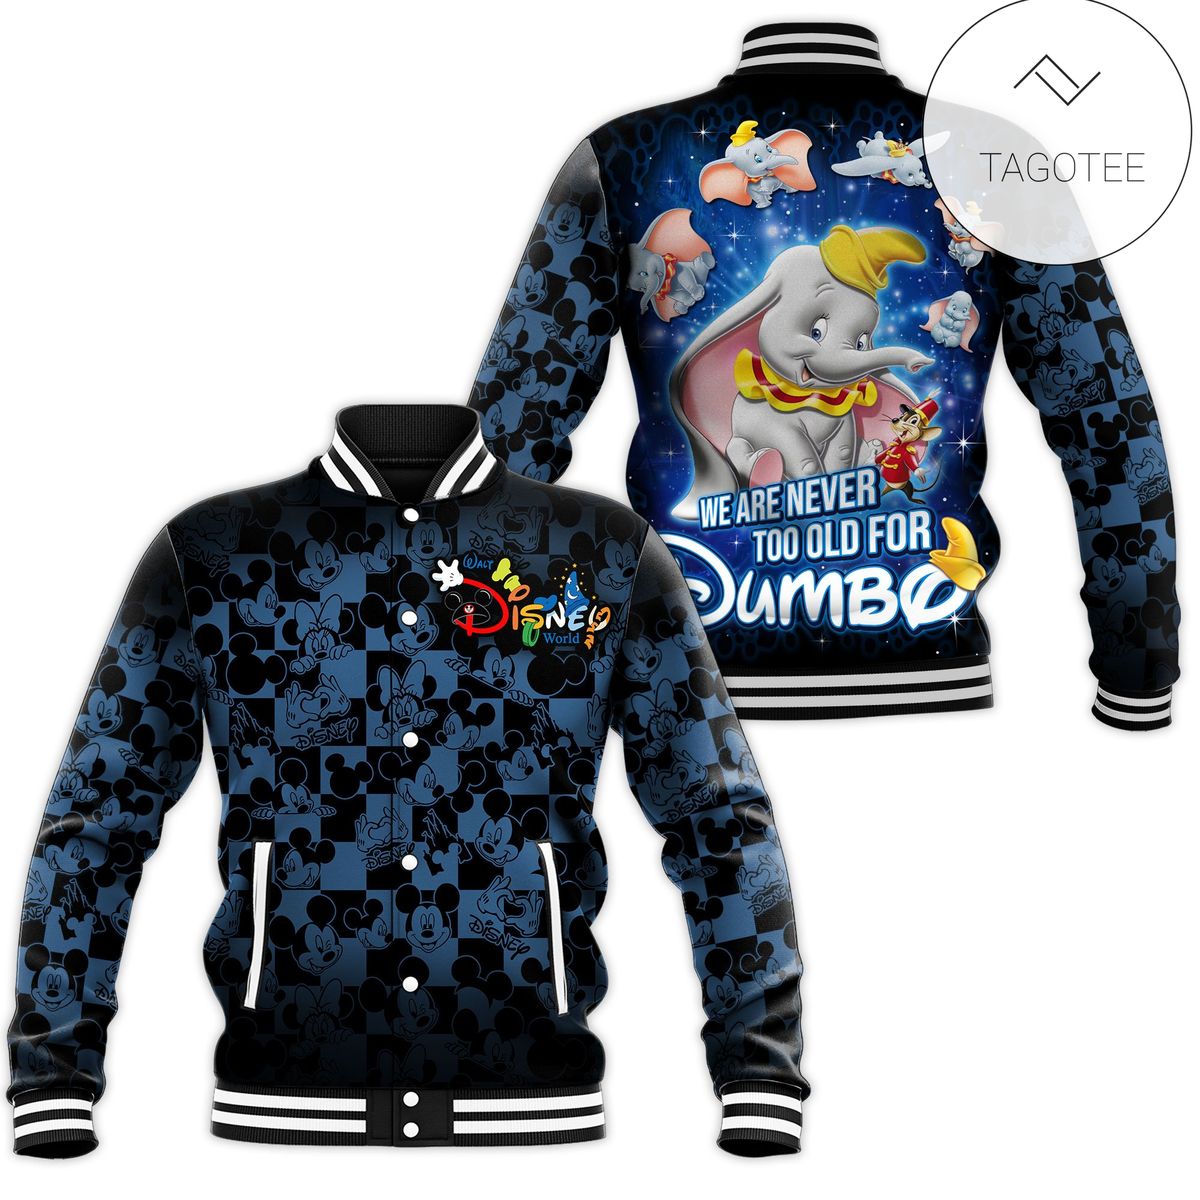 Dumbo Disney Gift All Over Print Baseball Jacket